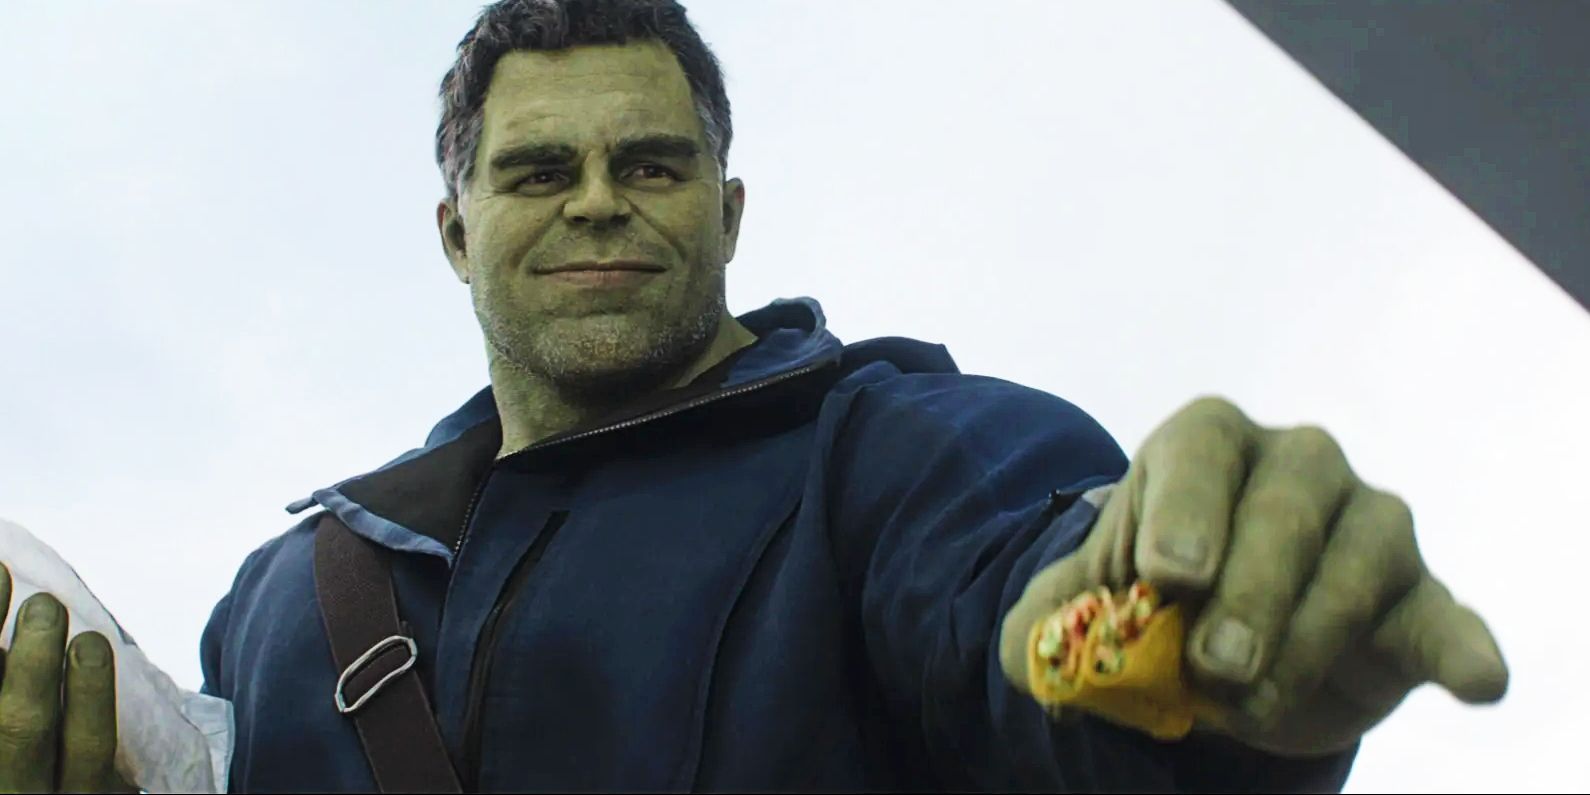 Hulk sharing his tacos